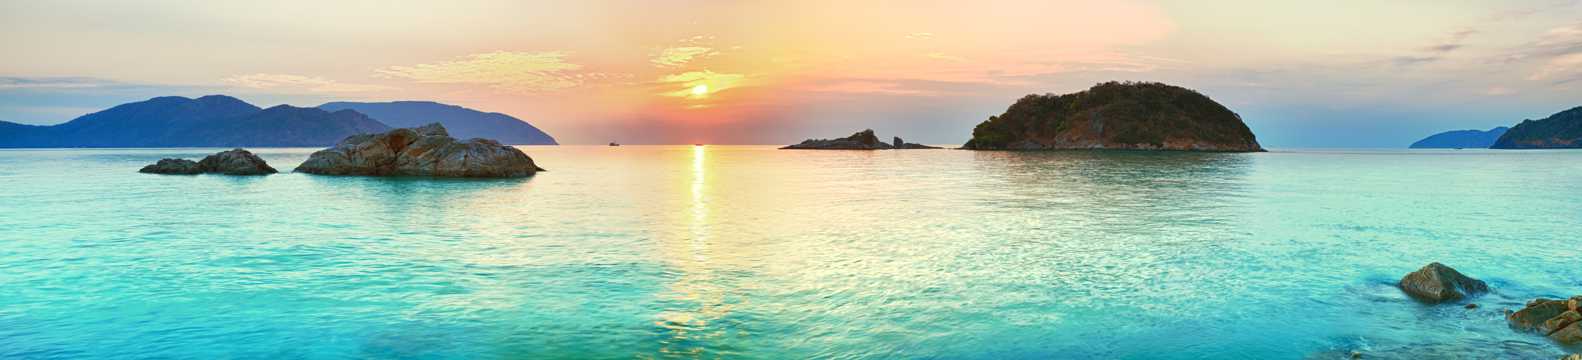 越南沙滩石朝阳图片